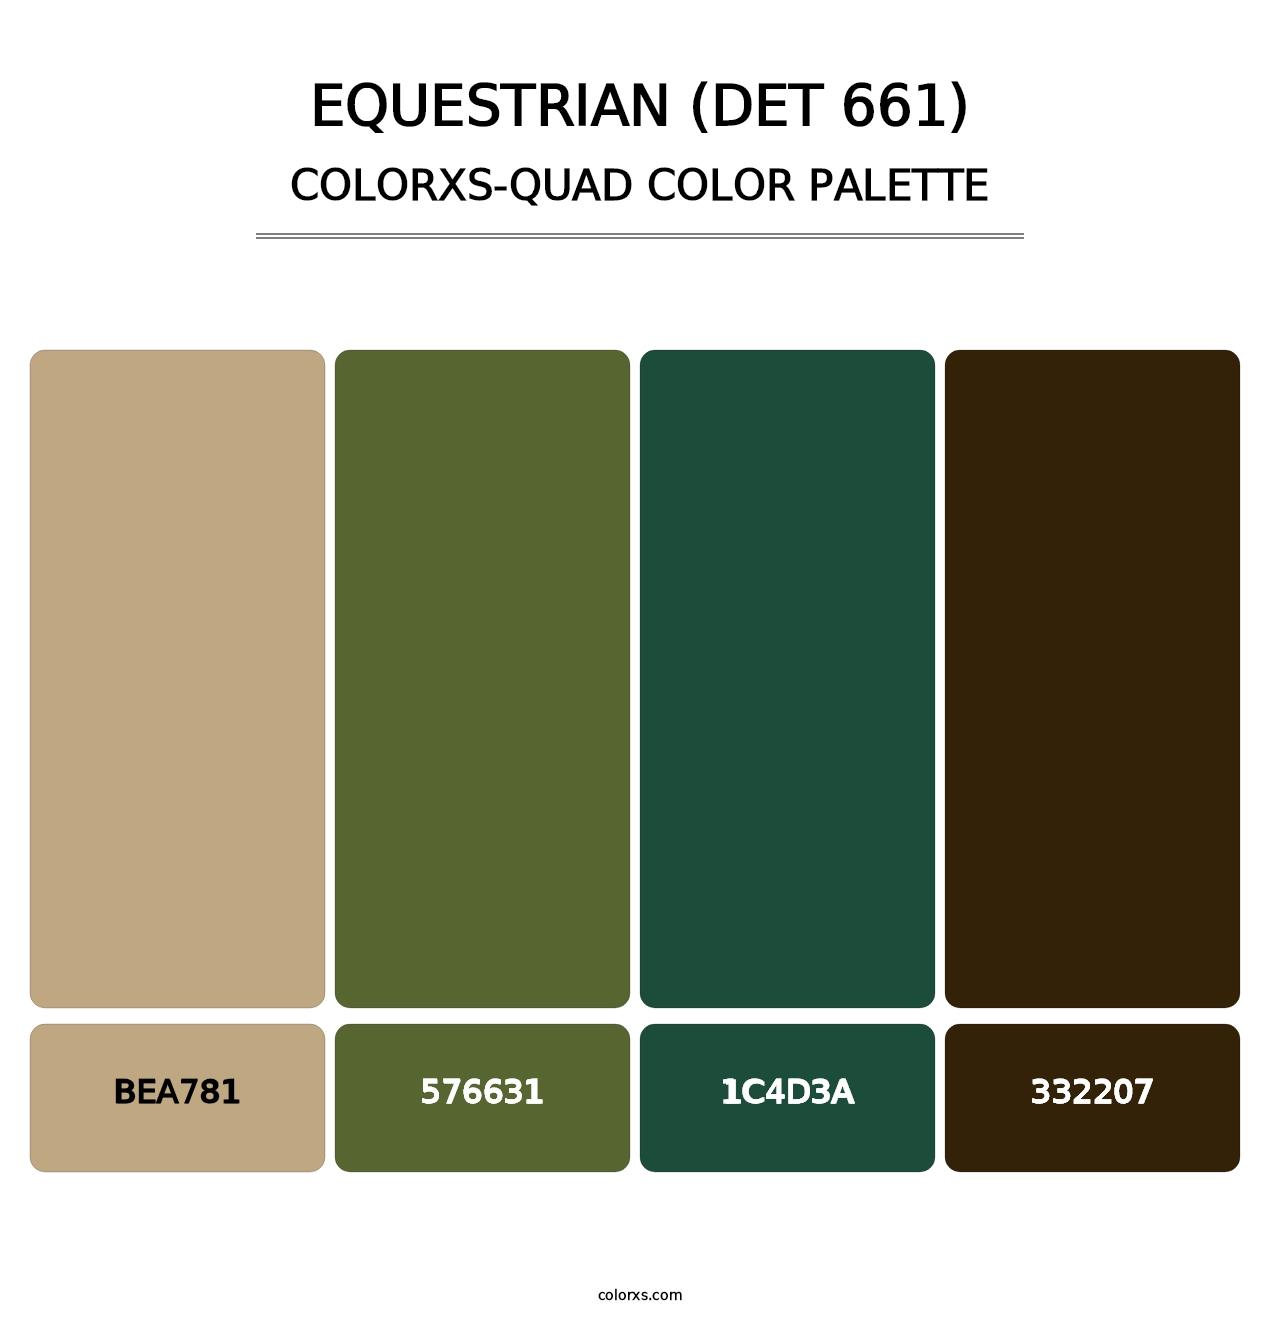 Equestrian (DET 661) - Colorxs Quad Palette